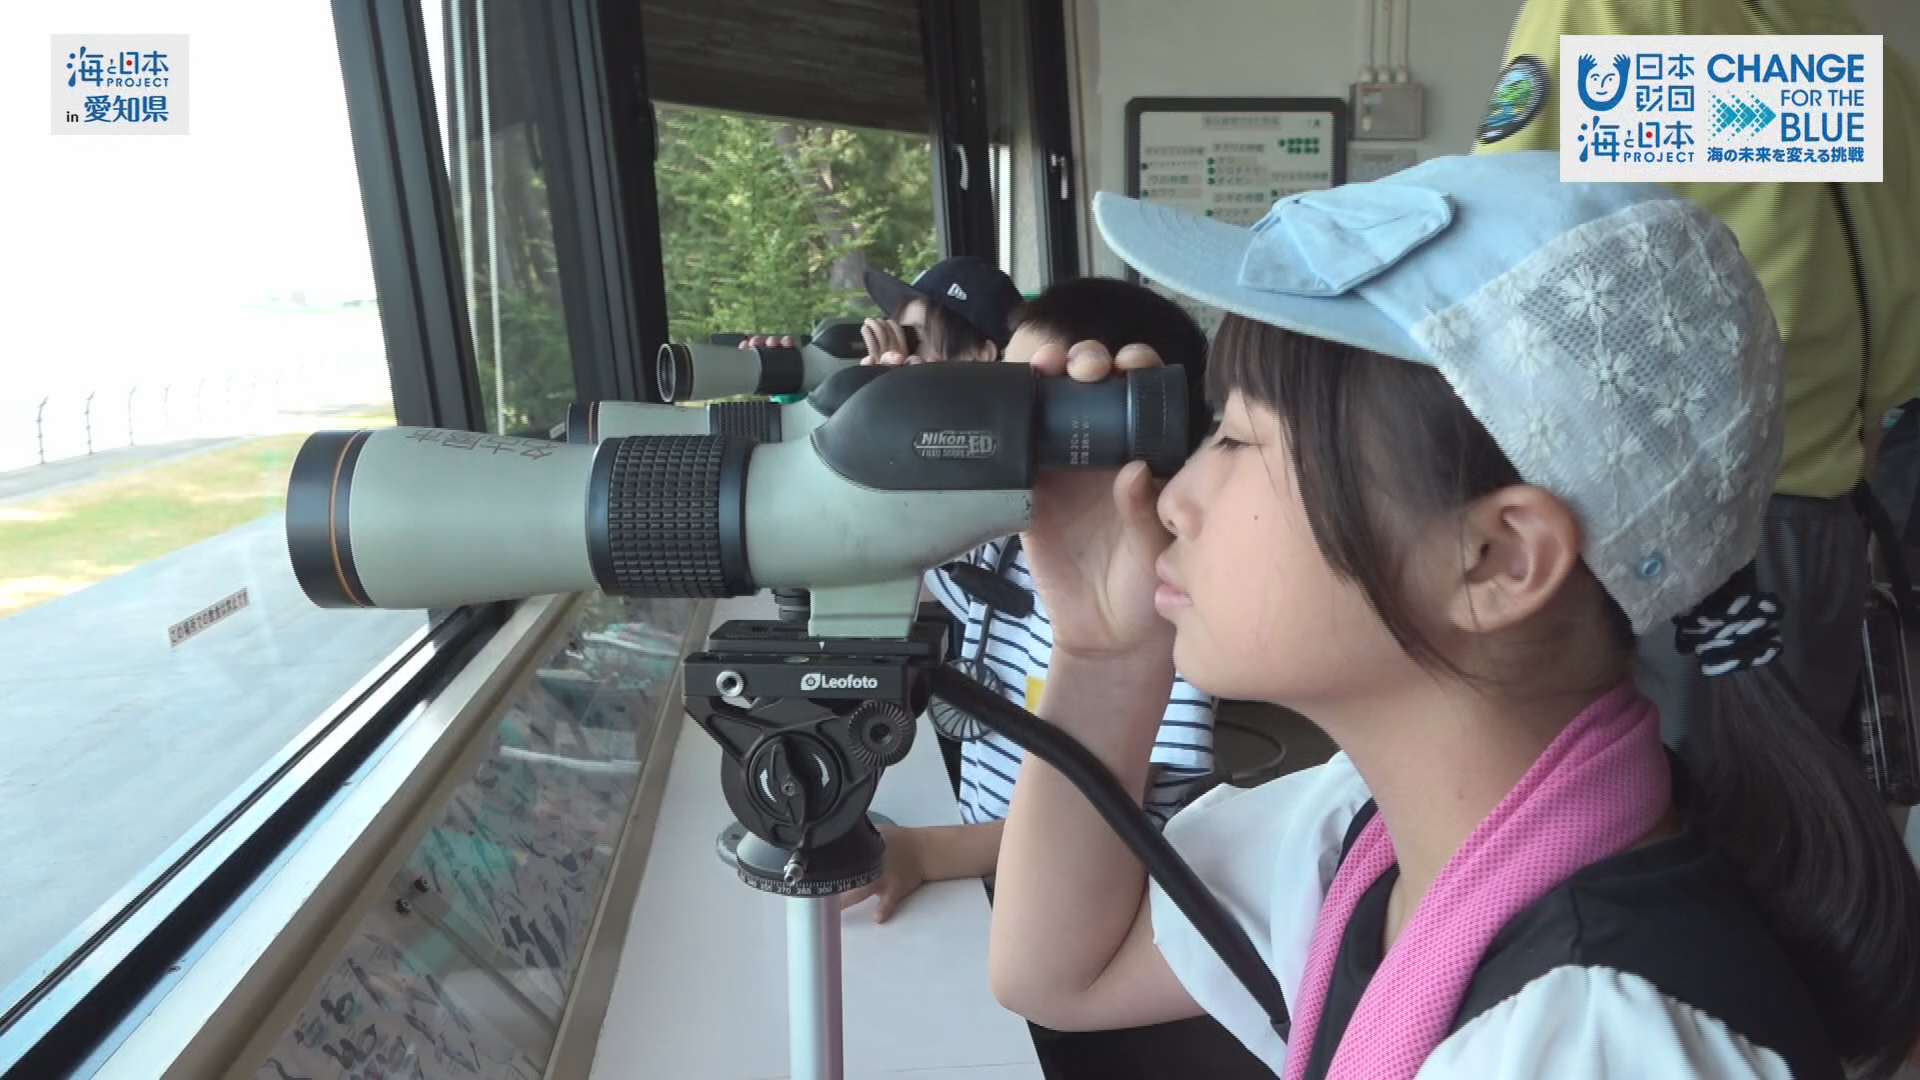 望遠鏡を覗く子ども